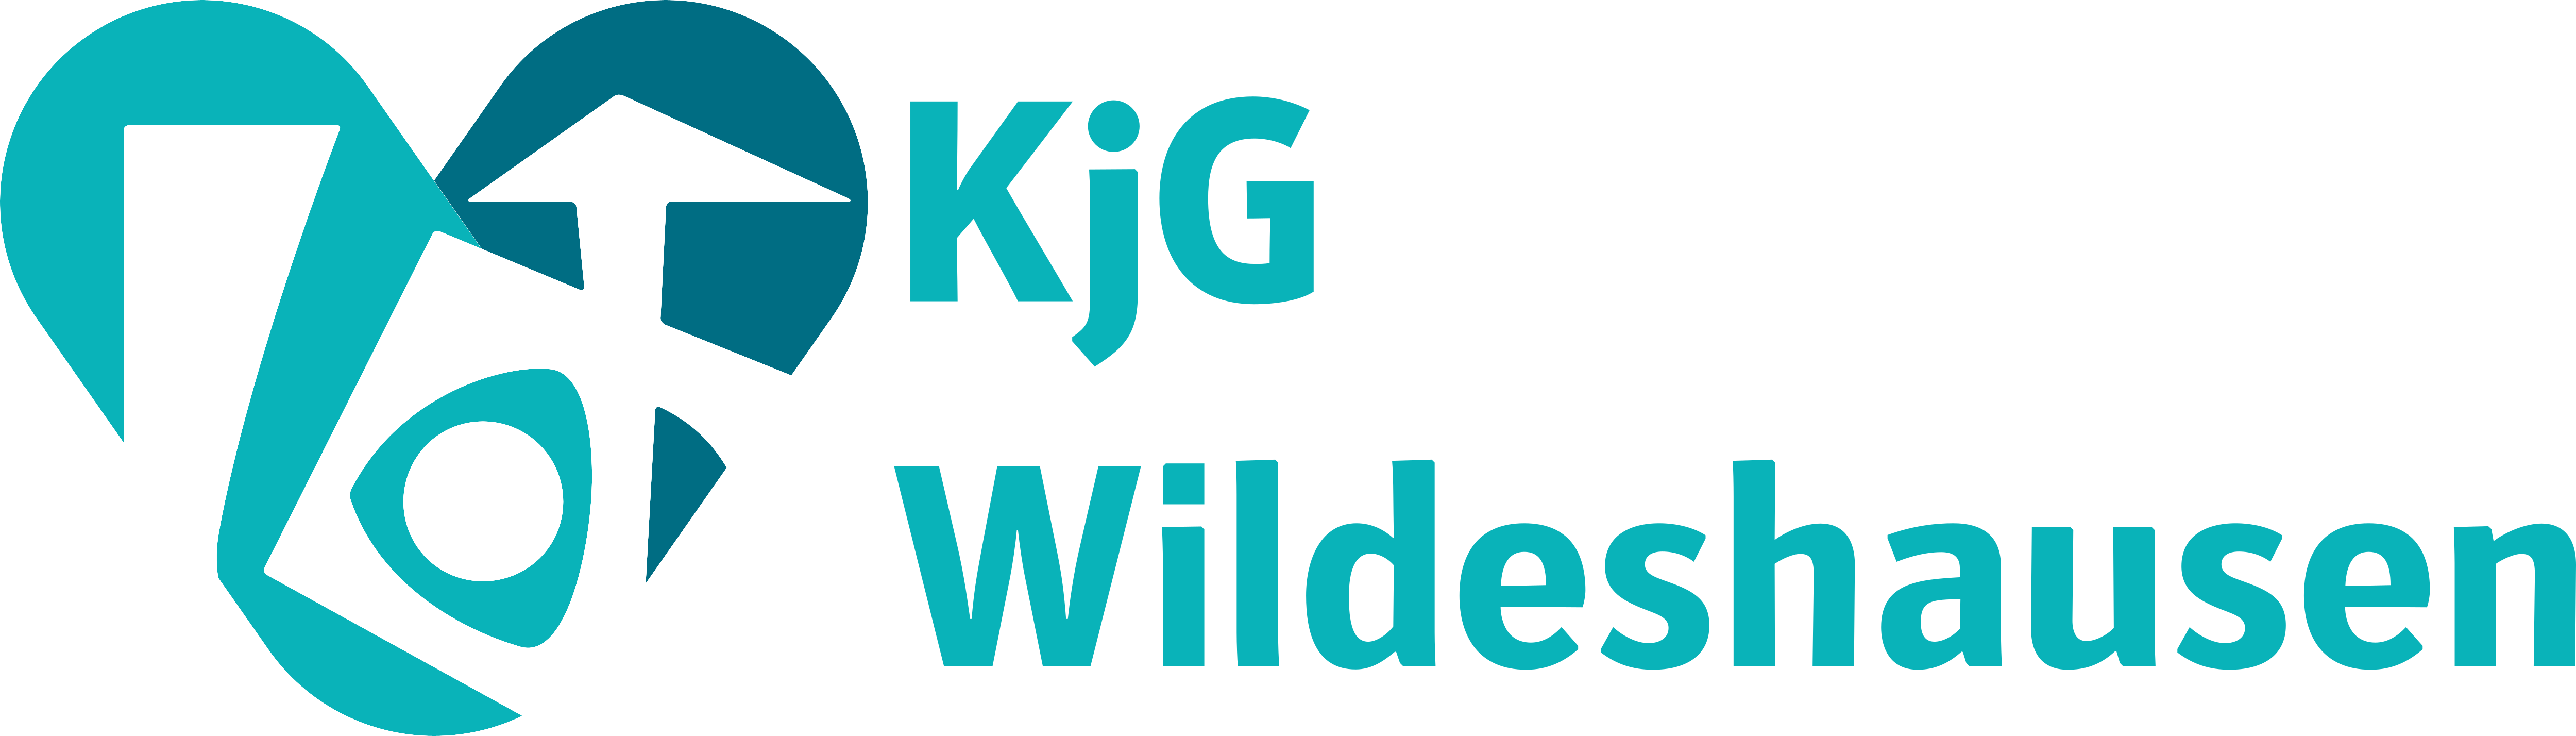 KjG-Wildeshausen